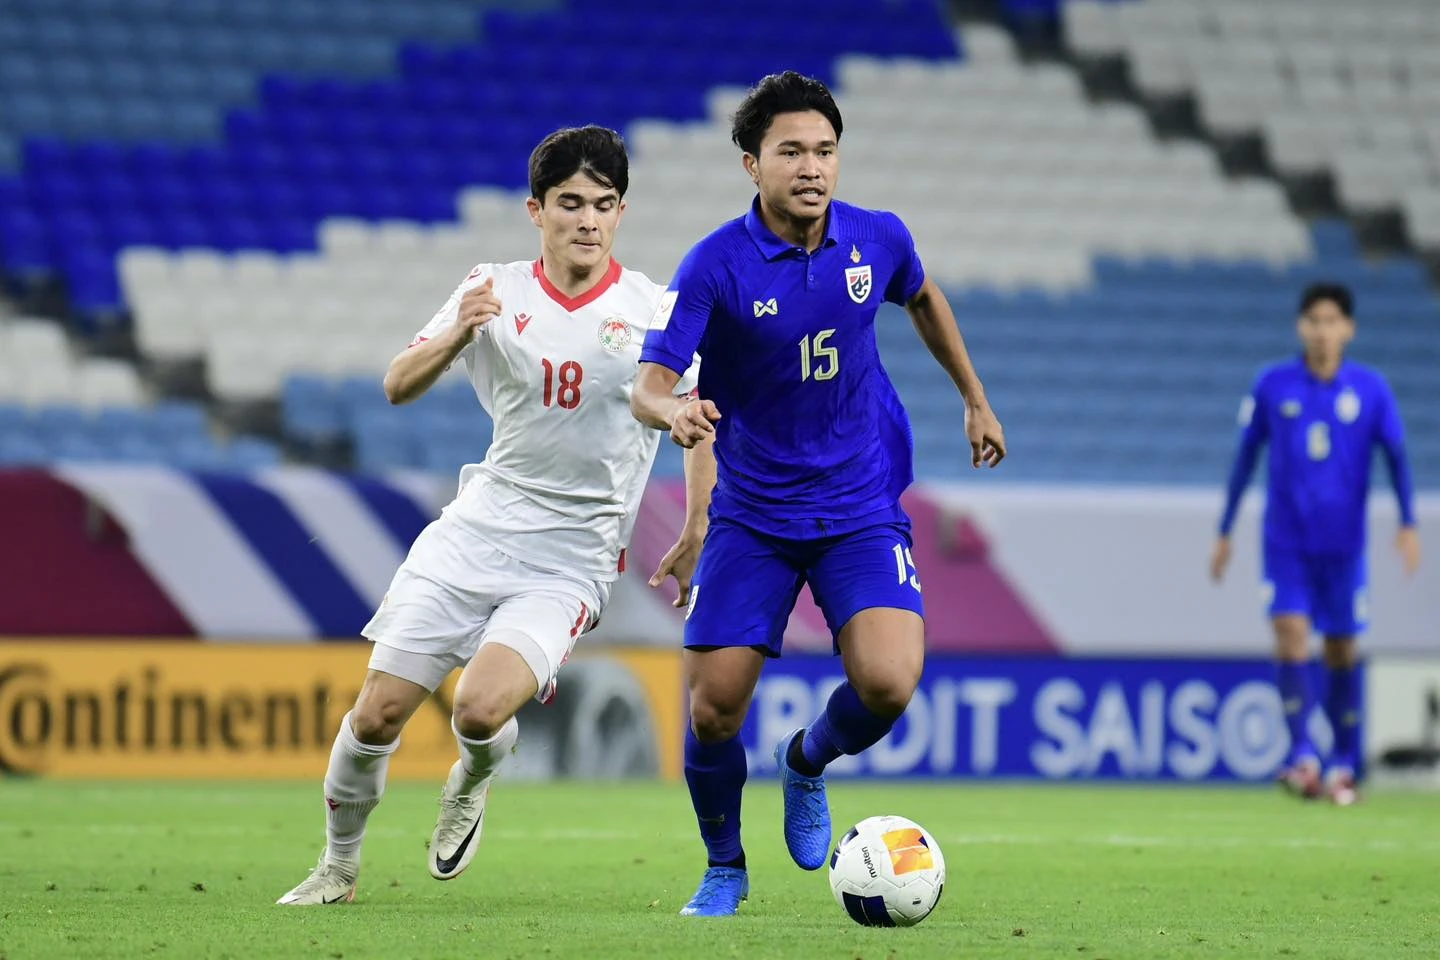 Xác định 8 đội vào tứ kết châu Á: Tự hào U.23 Việt Nam và Indonesia